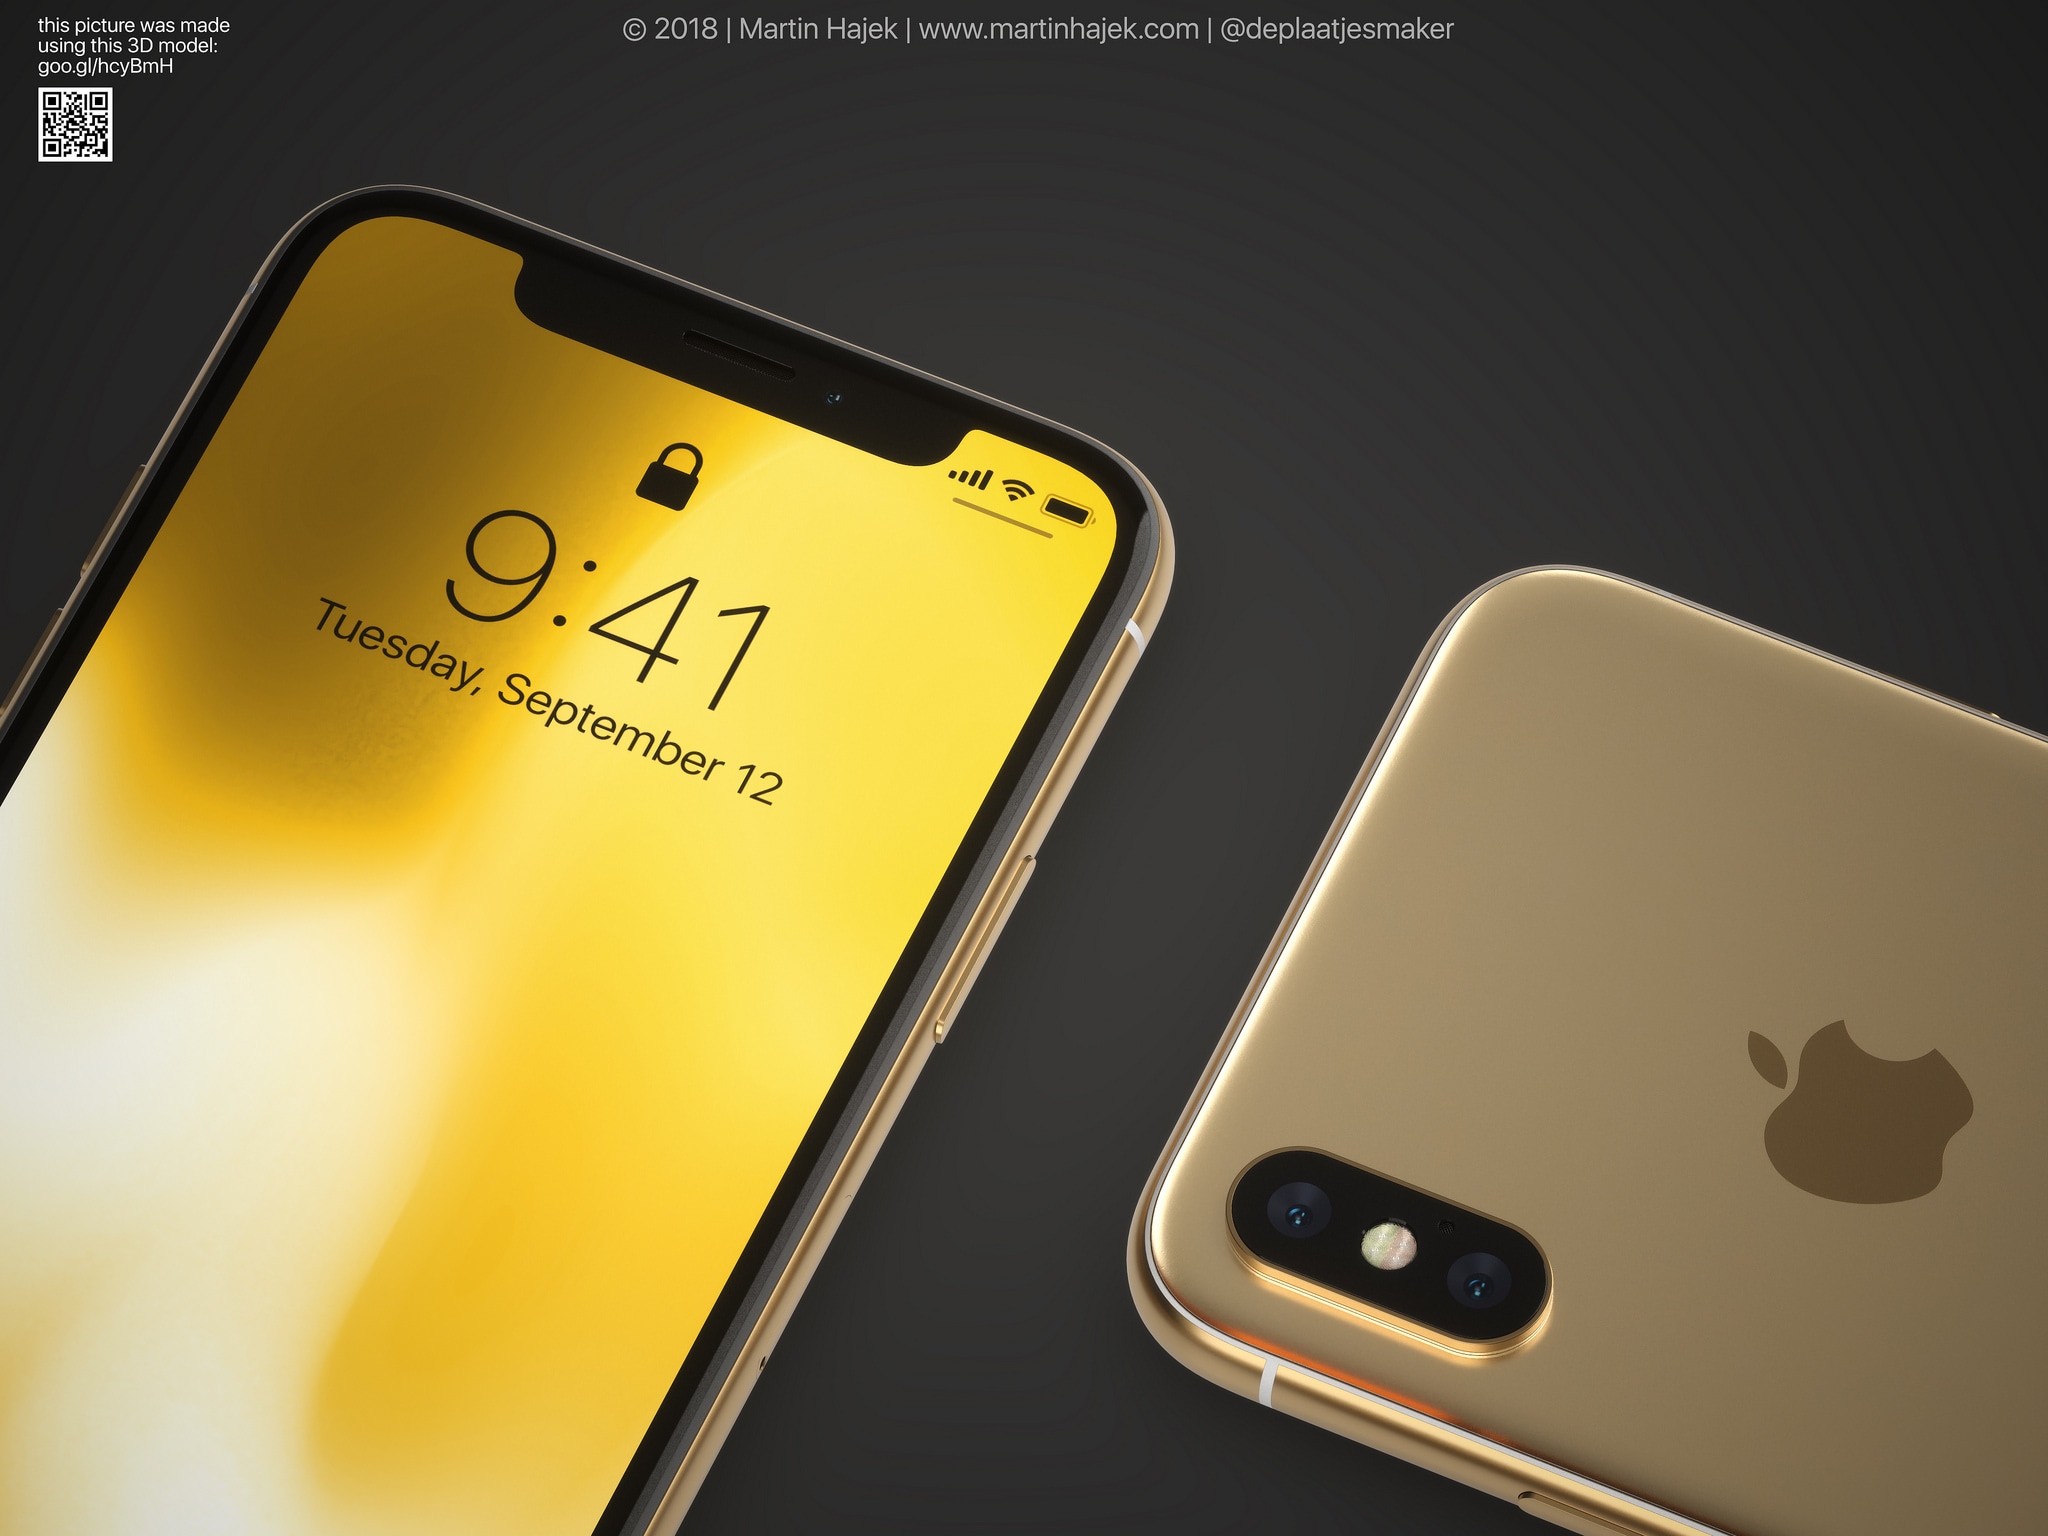 Conceito de iPhone X Plus dourado